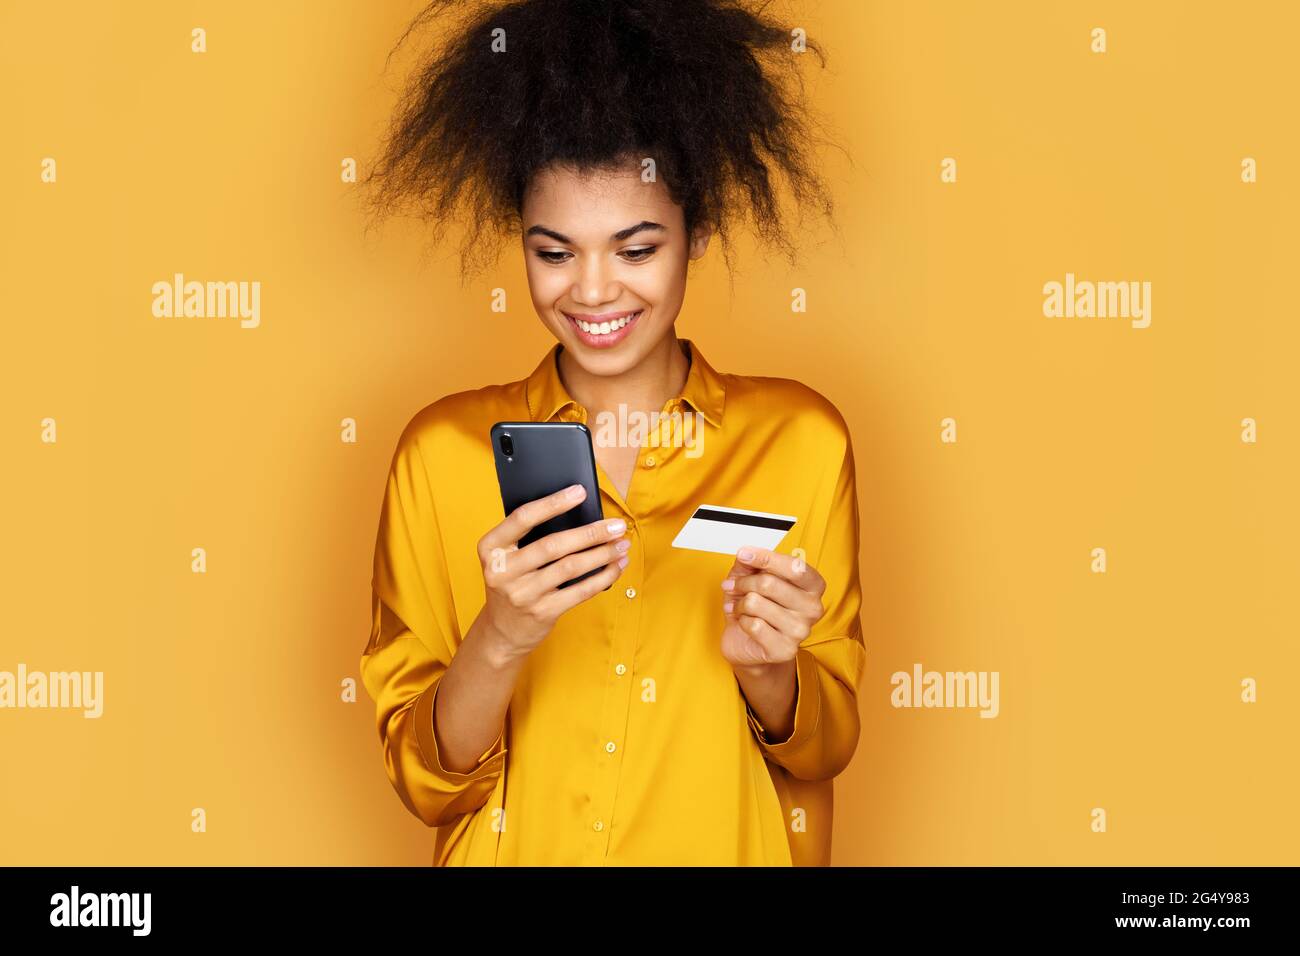 Jeune fille fait un paiement, en utilisant une carte de crédit et un smartphone. Photo d'une fille afro-américaine sur fond jaune Banque D'Images